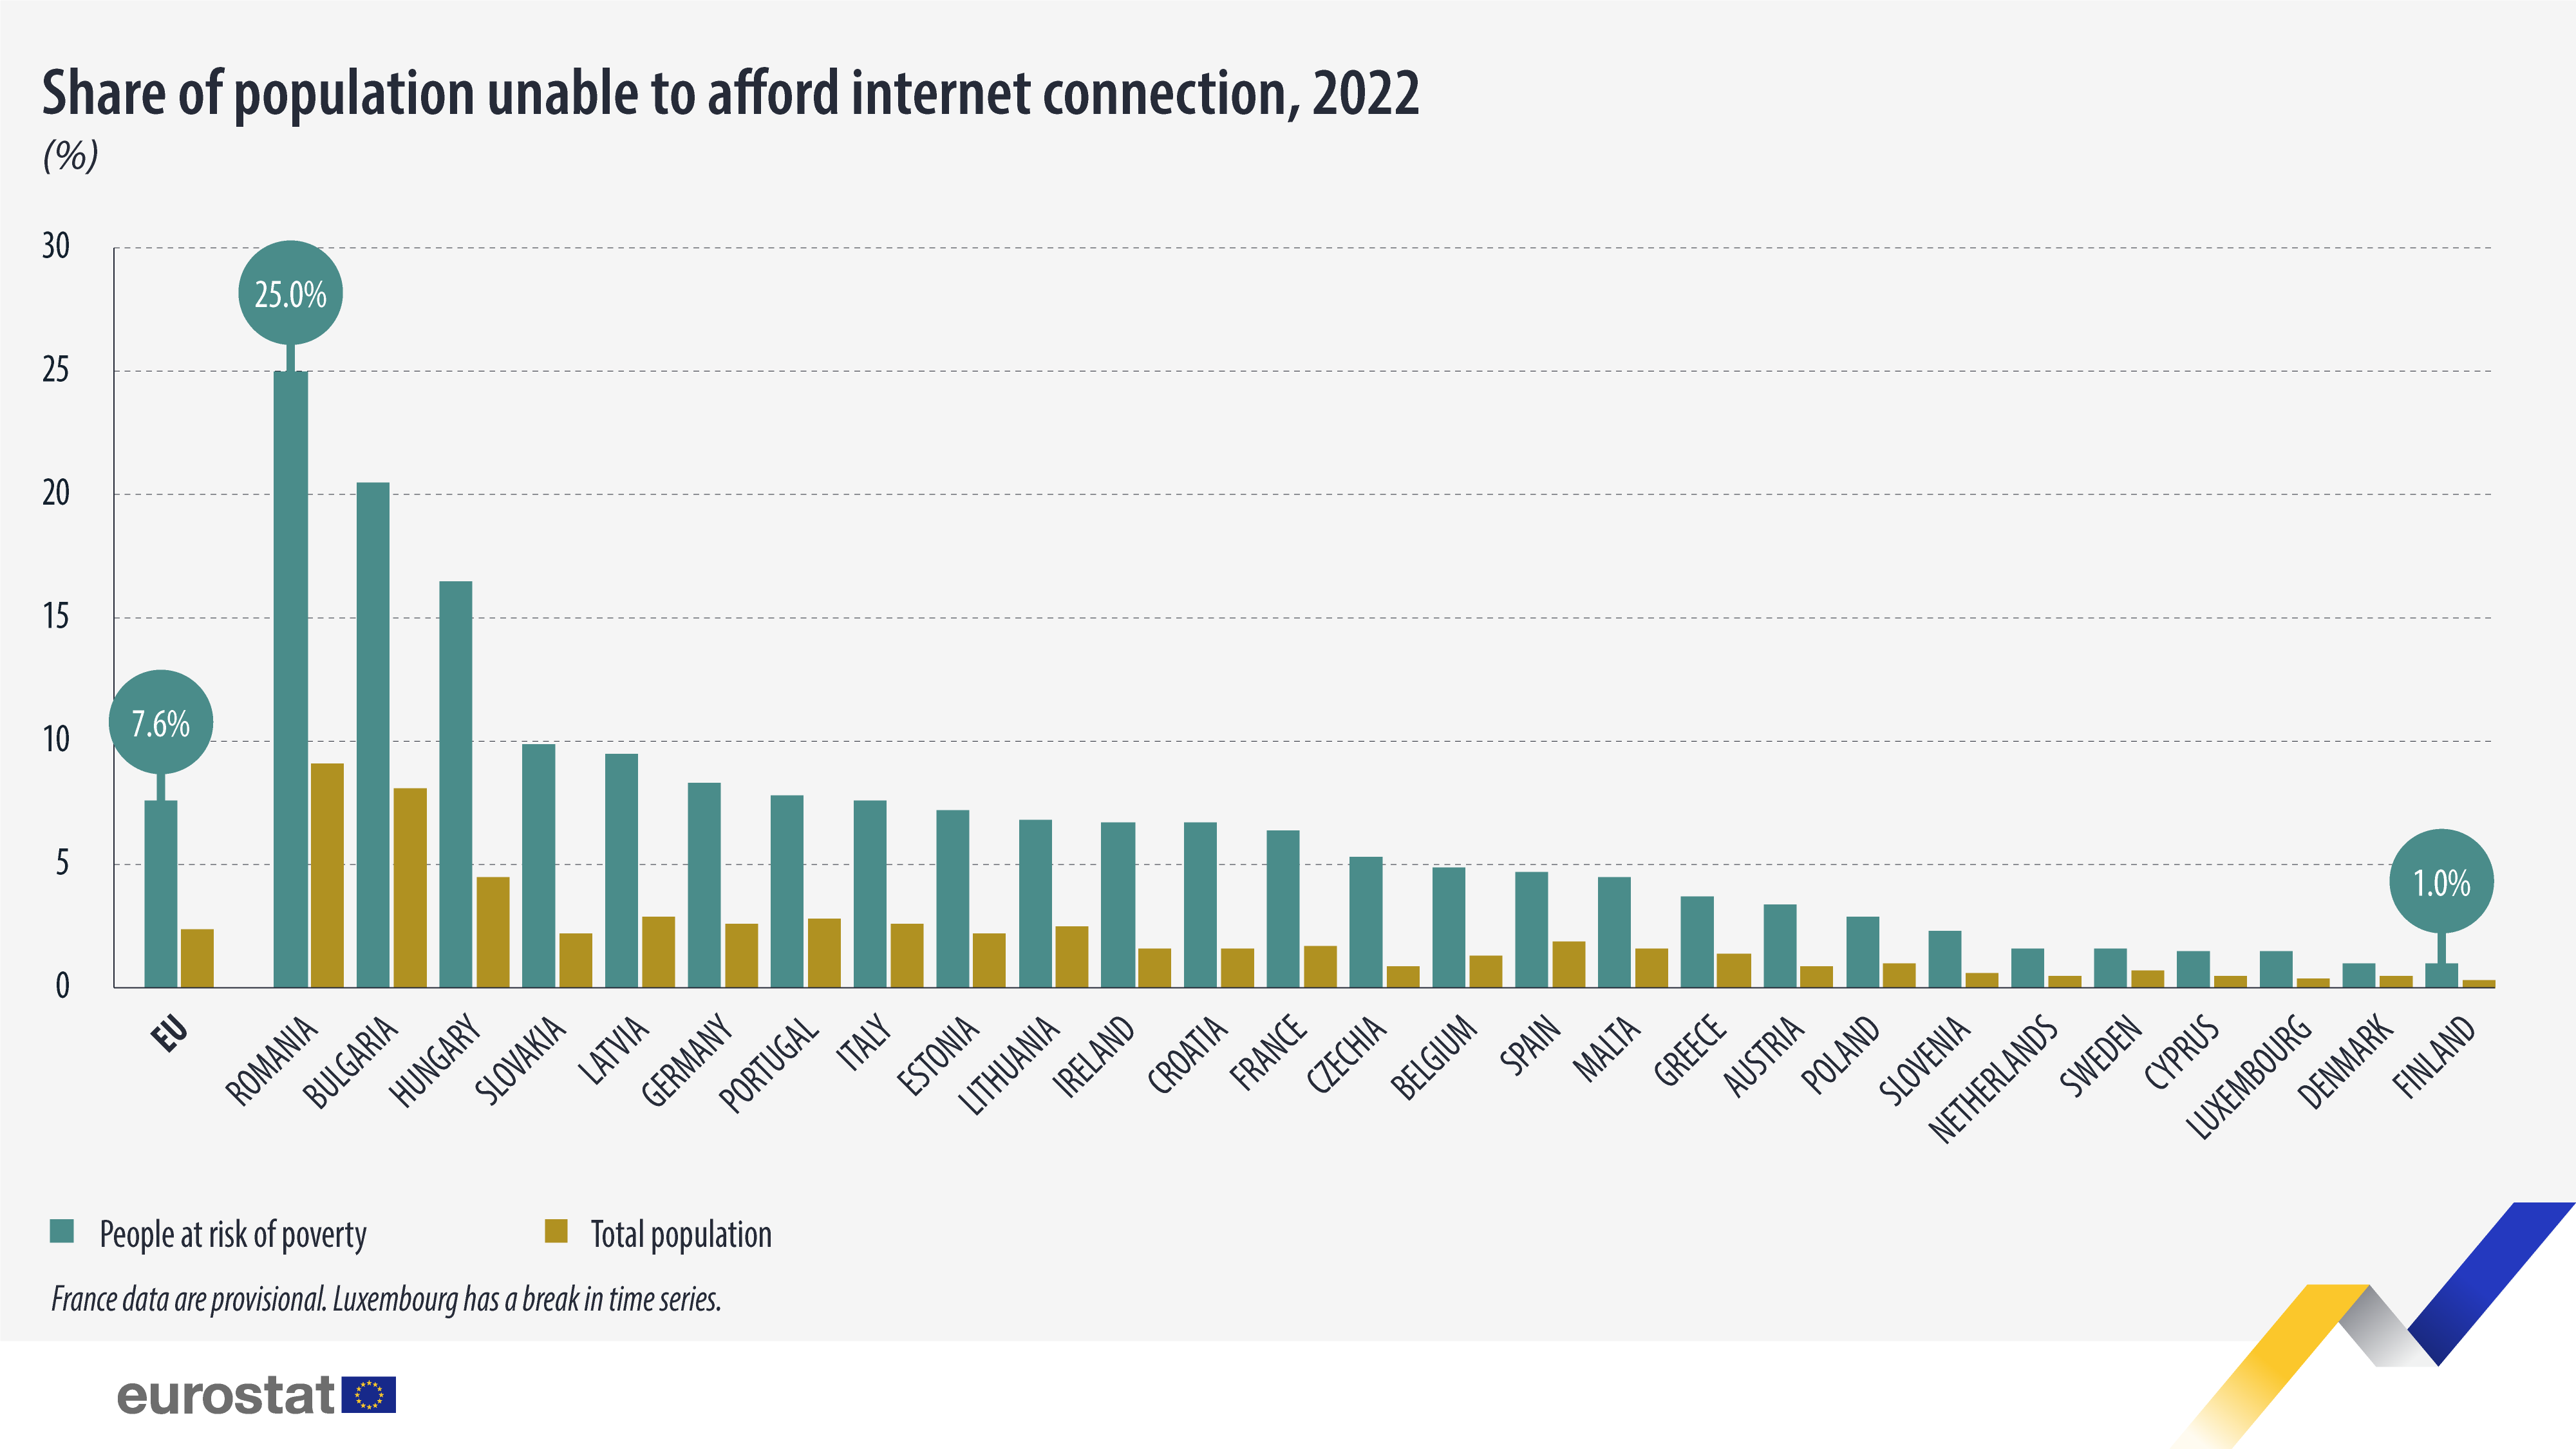 Γράφημα ράβδων: Μερίδιο πληθυσμού που δεν μπορεί να αντέξει οικονομικά τη σύνδεση στο Διαδίκτυο, 2022